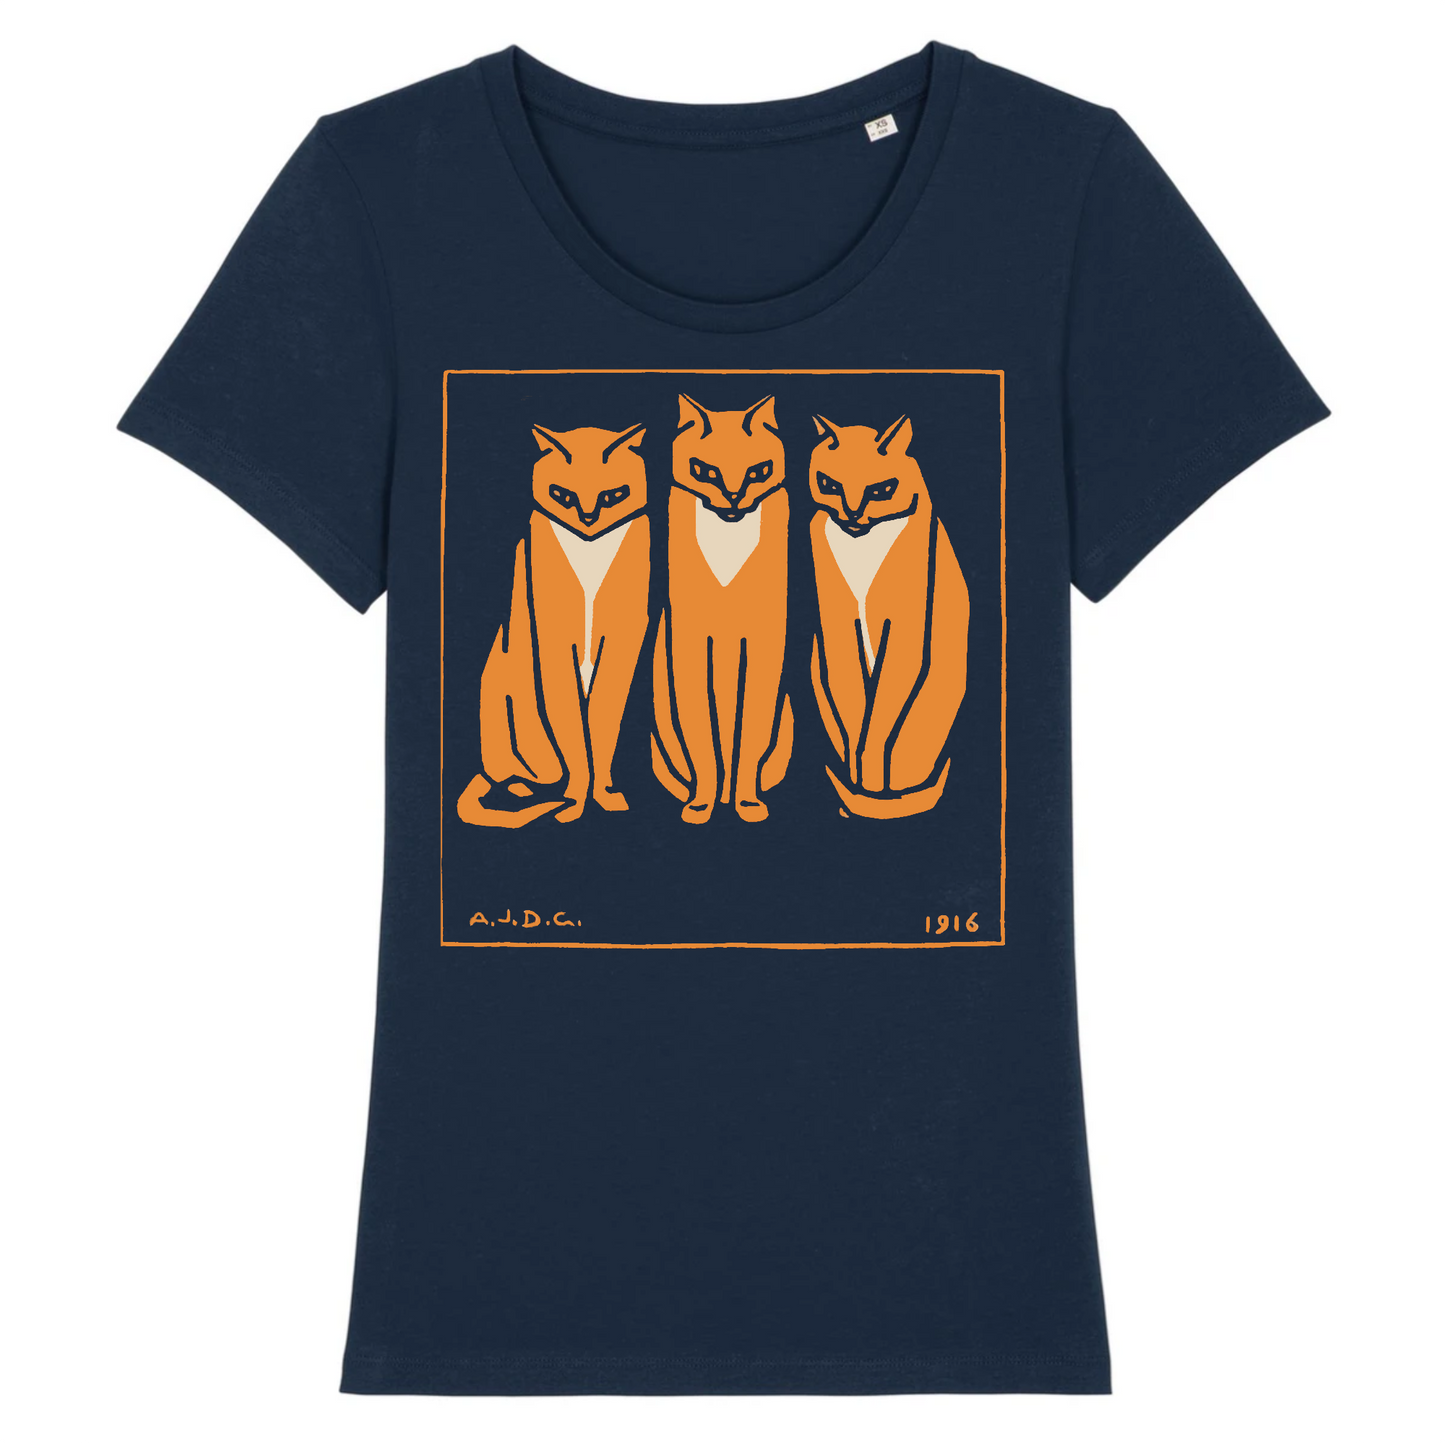 Three Cats by Julie de Graag, Women's Organic T-Shirt - 1915